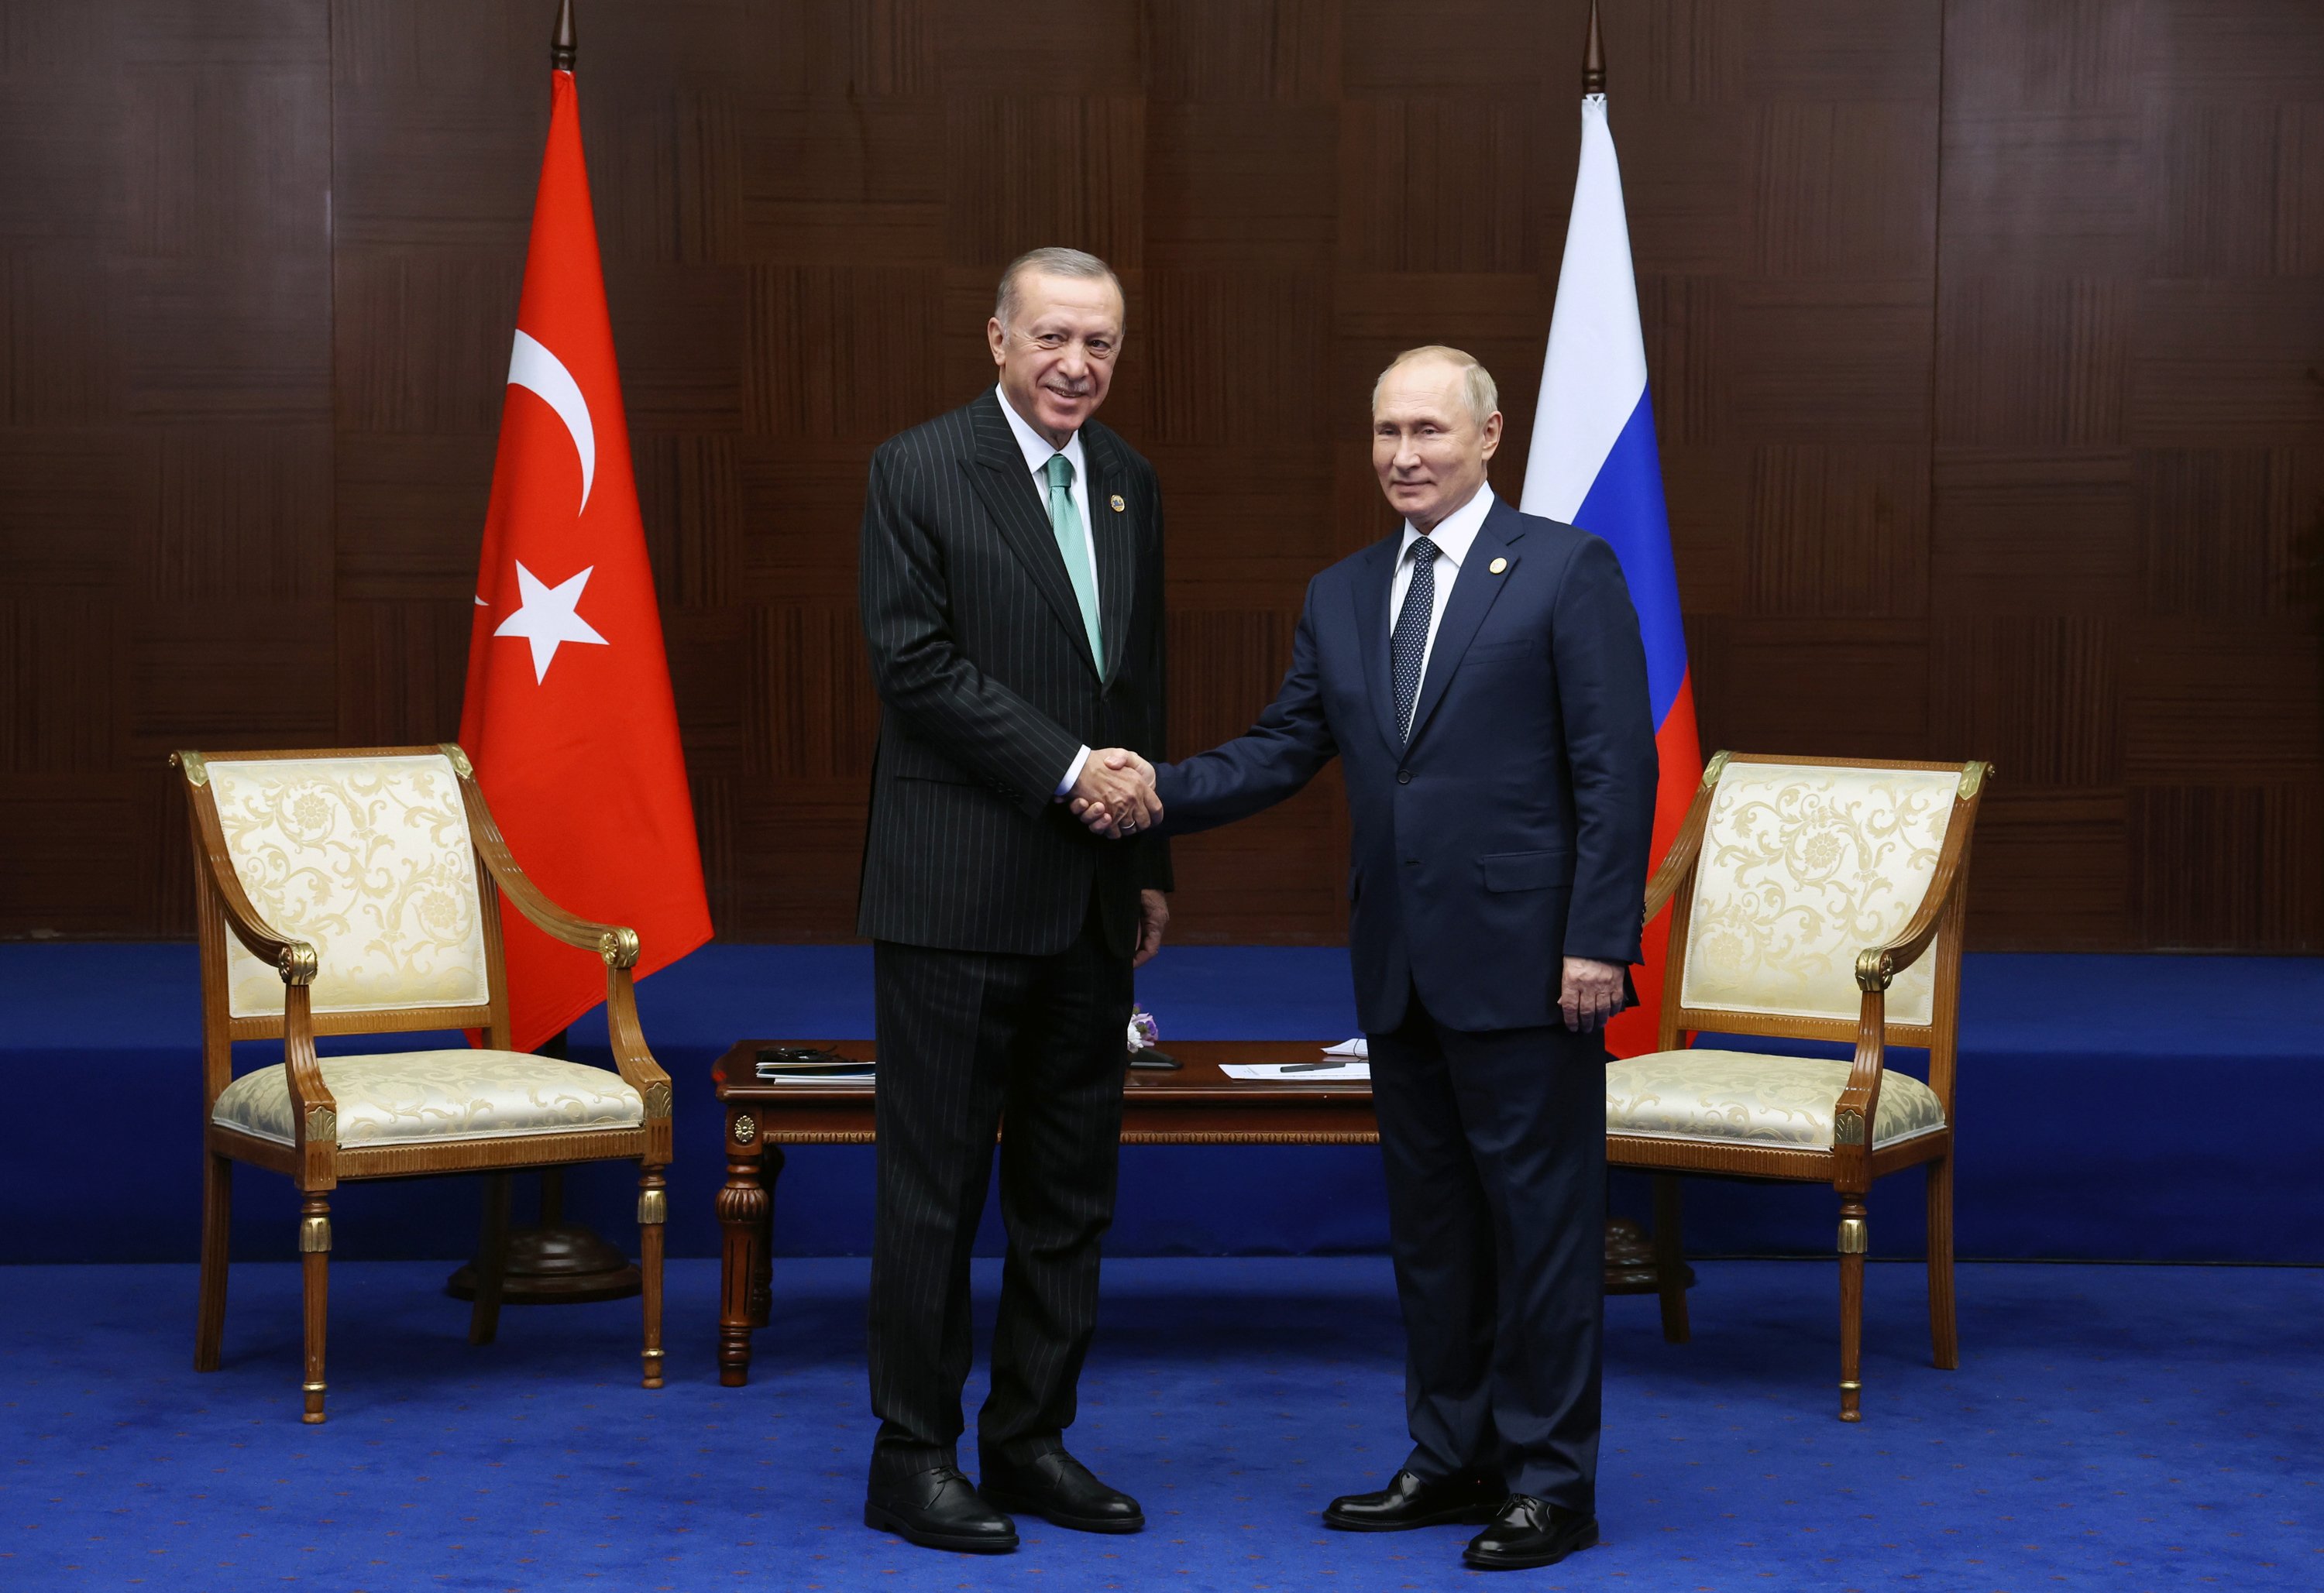 Turquia construirà, a petició de Putin, un gasoducte per portar gas rus a Europa